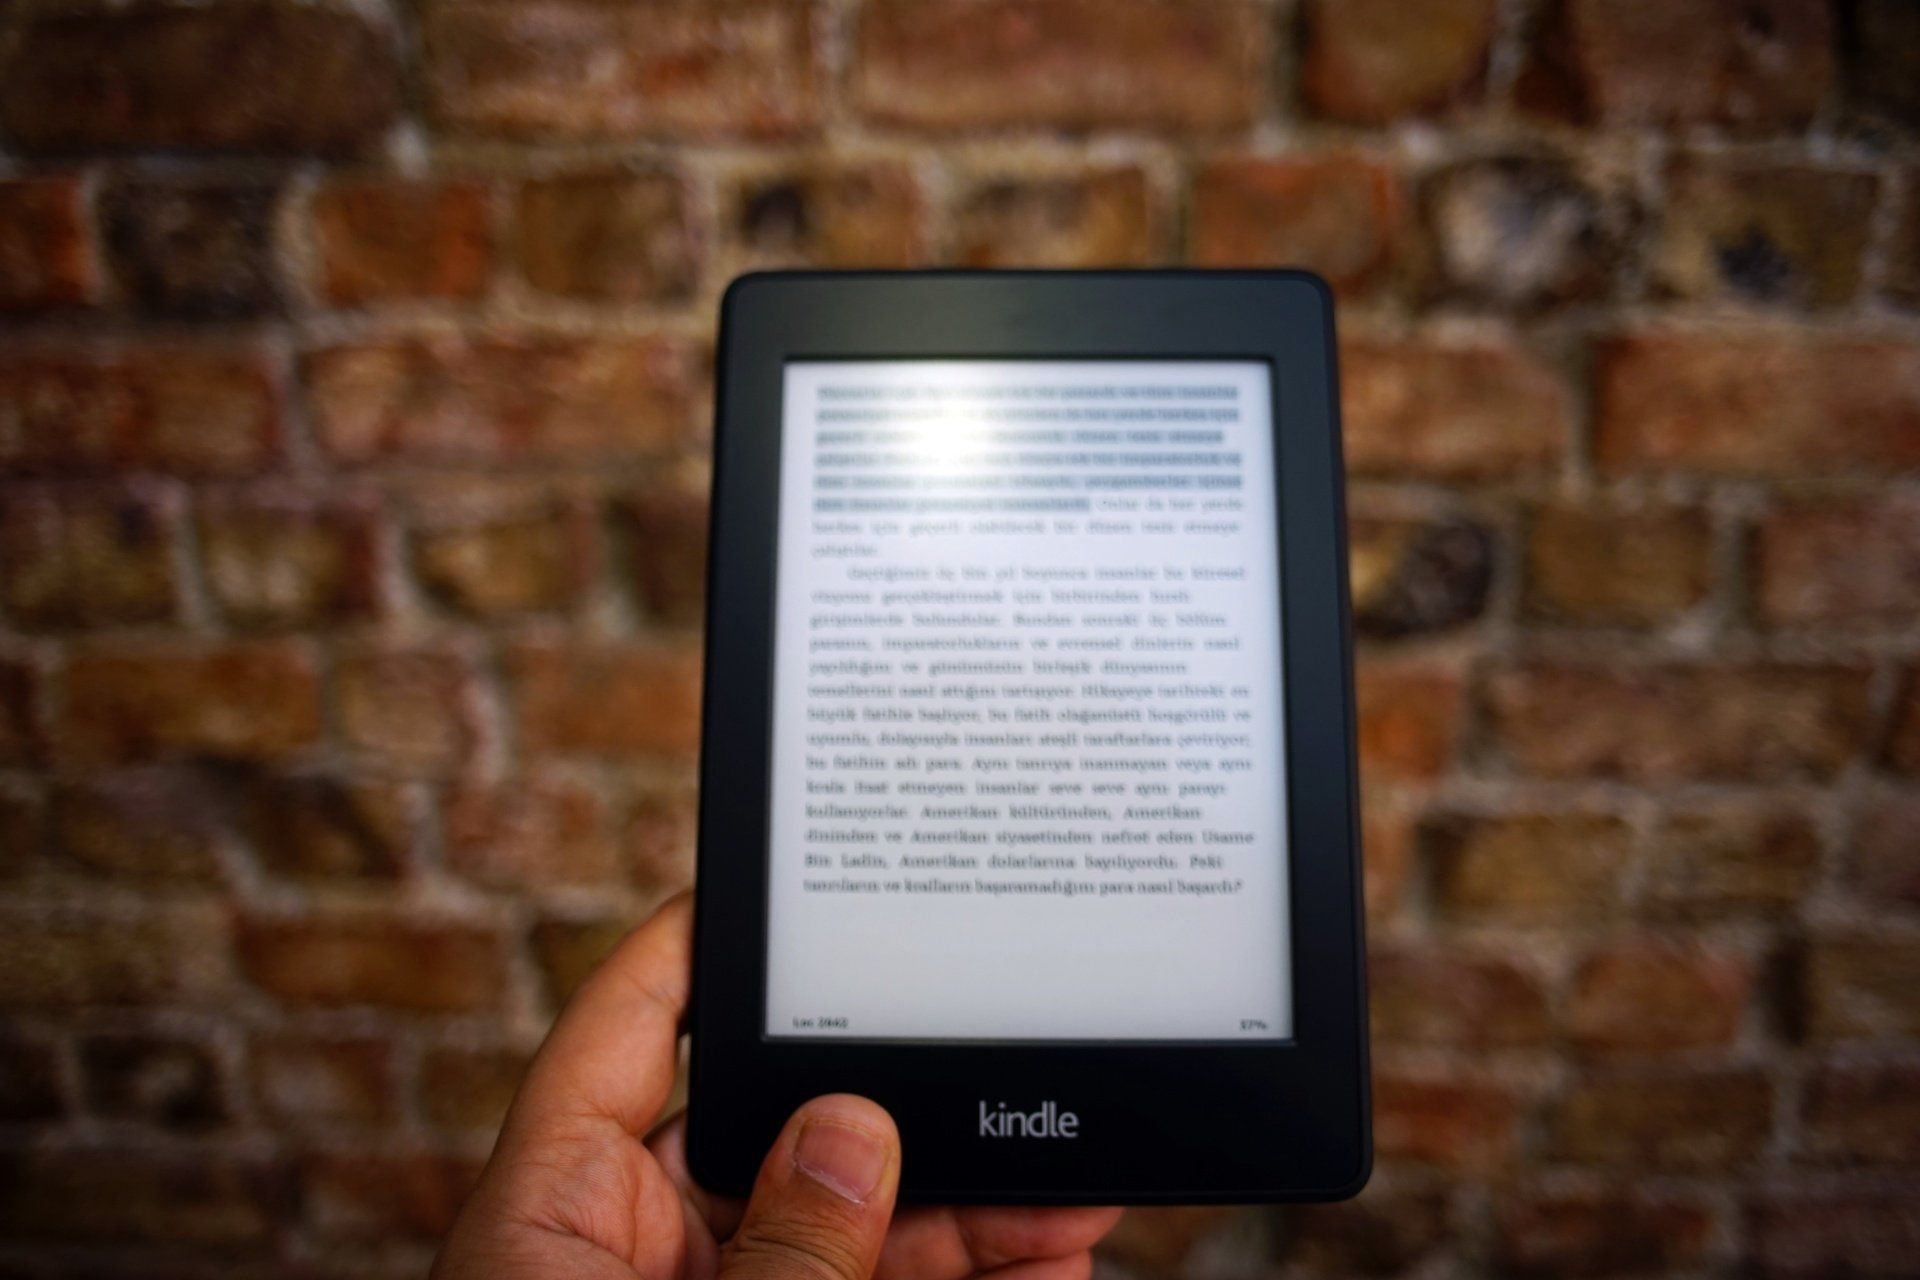 Kindle ou livro físico: qual a melhor escolha para a leitura?